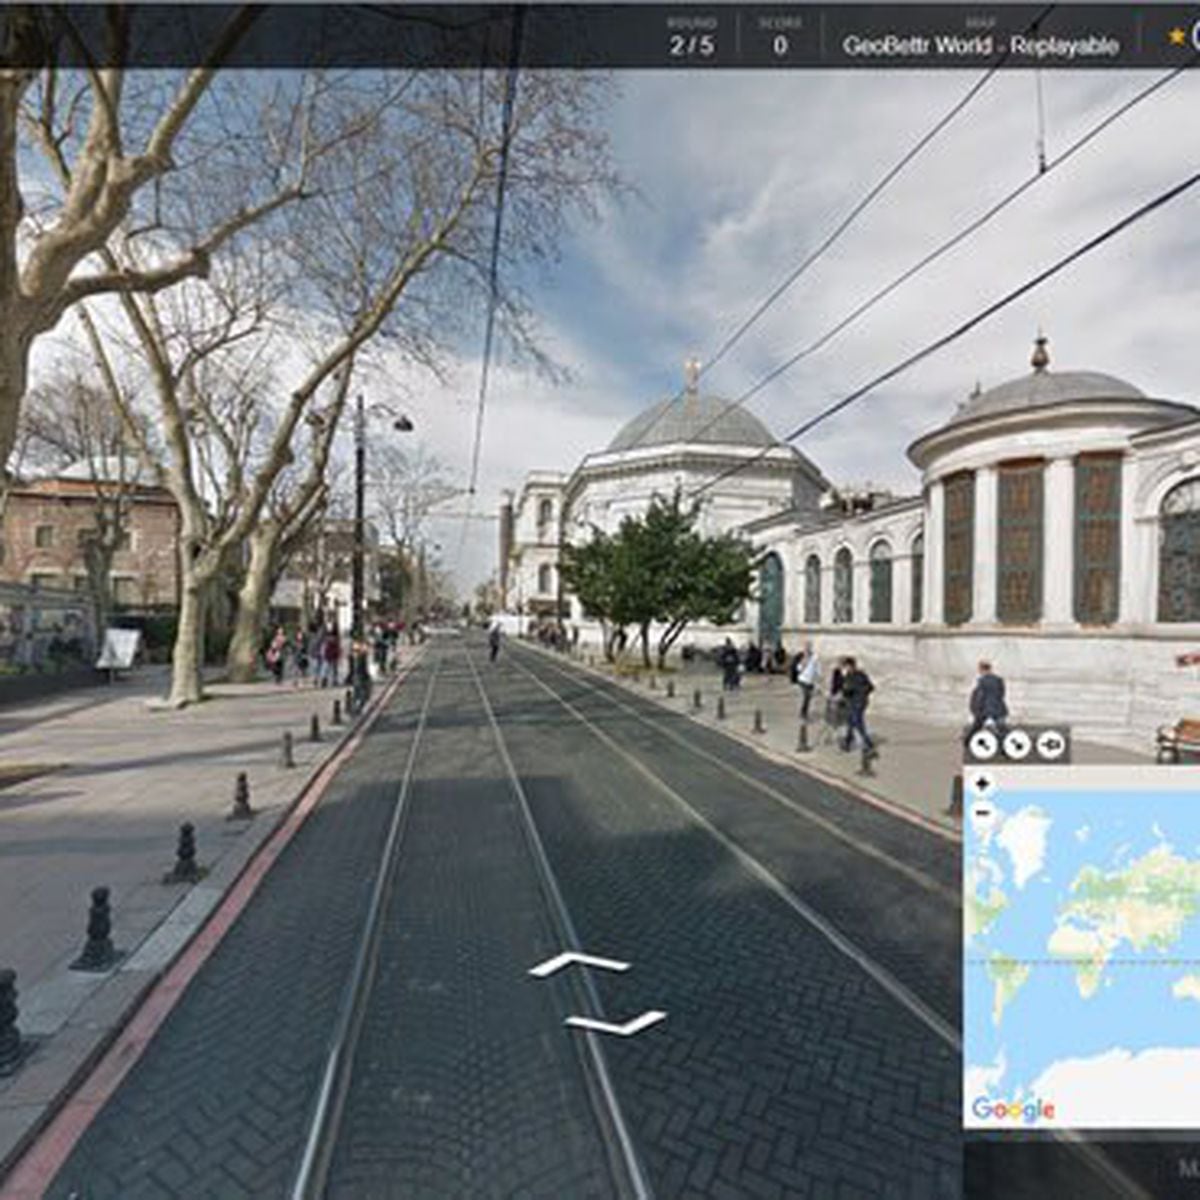 GeoGuessr: jogo de computador usa Street View para criar desafios